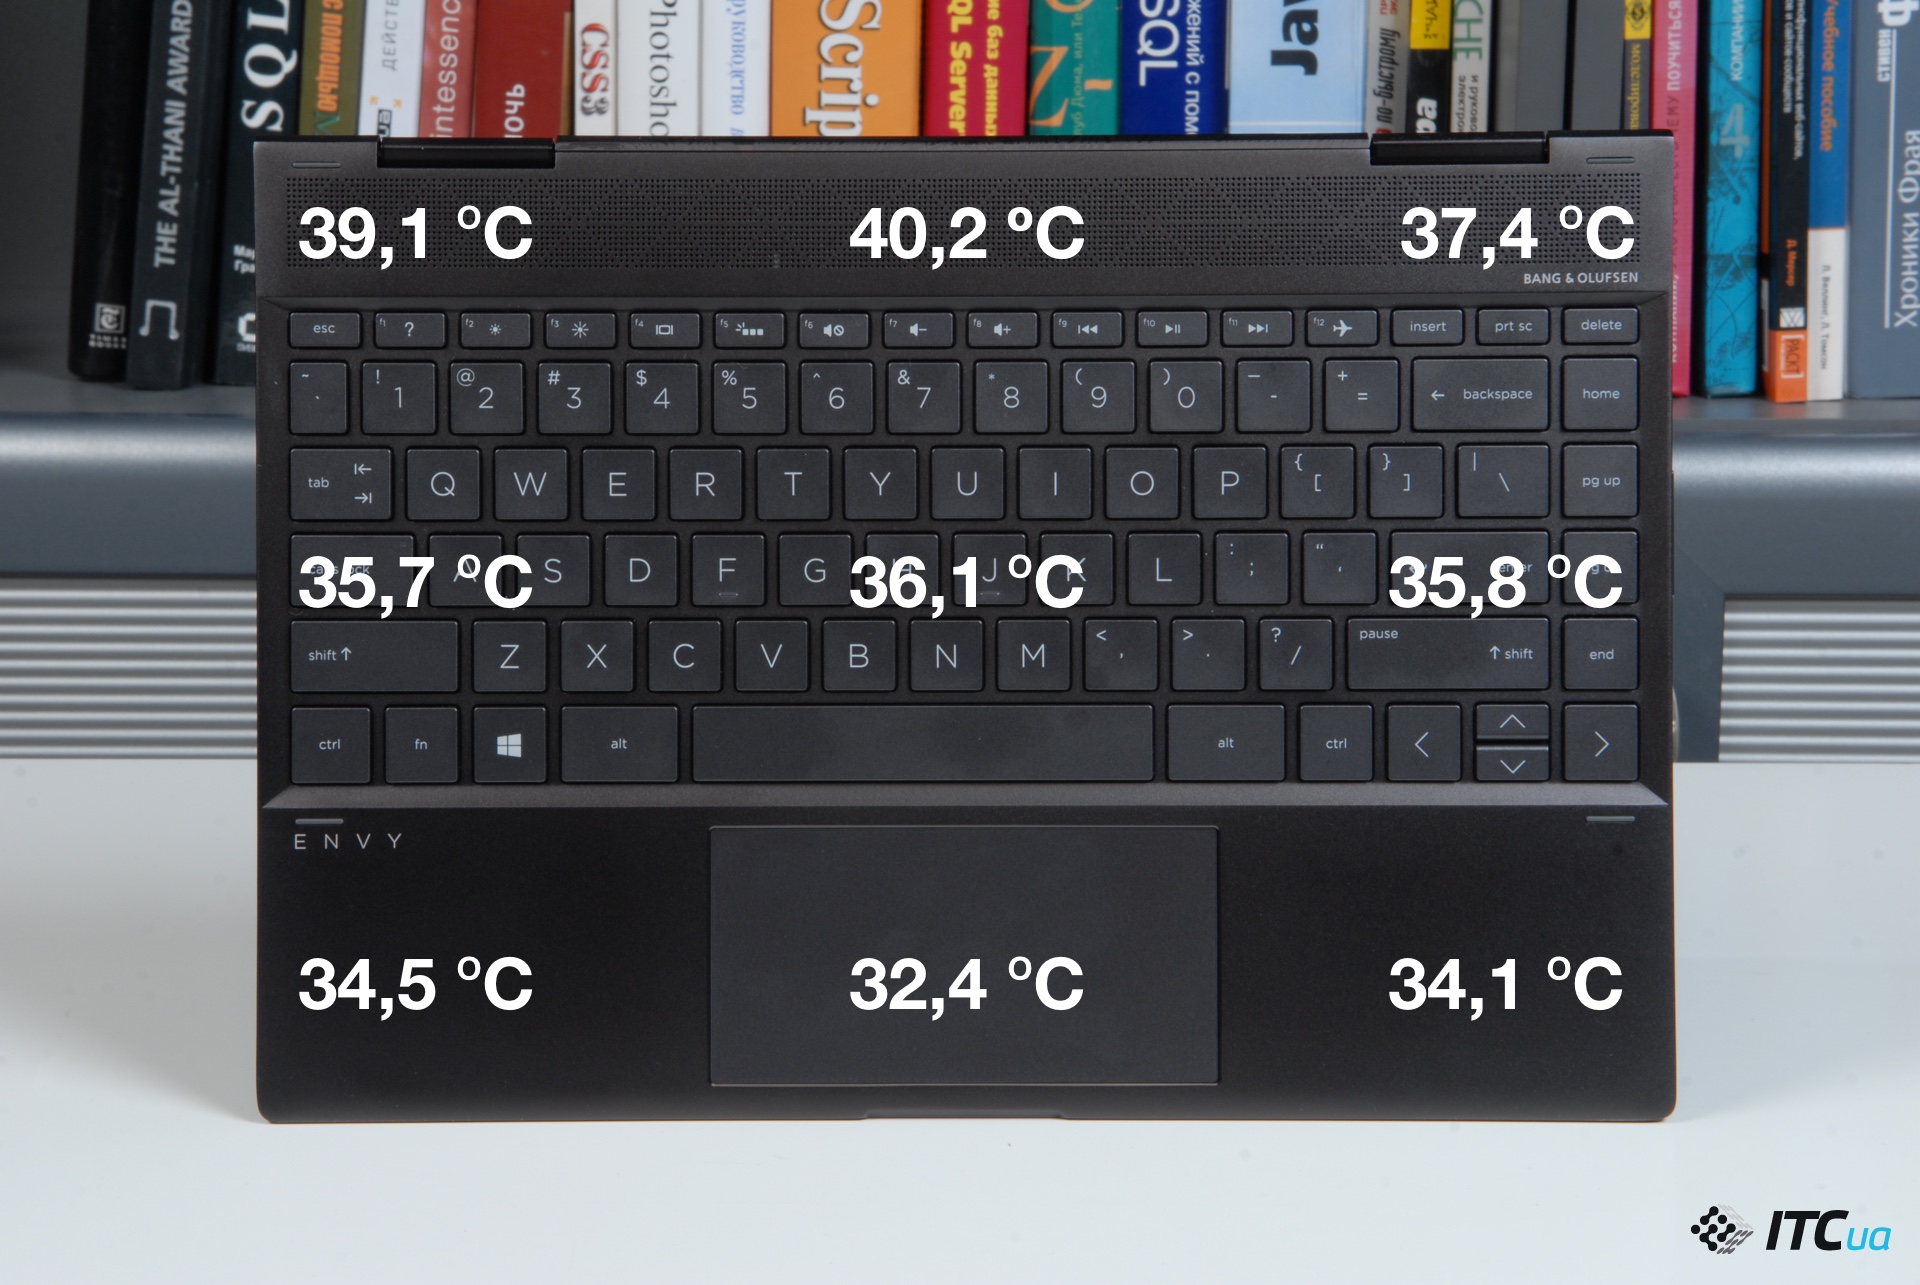 Корпус ноутбука найсильніше нагрівається в області над клавіатурою, в цьому місці його температура досягає 40 градусів Цельсія, тобто він стає відчутно теплим, але це не викликає дискомфорту